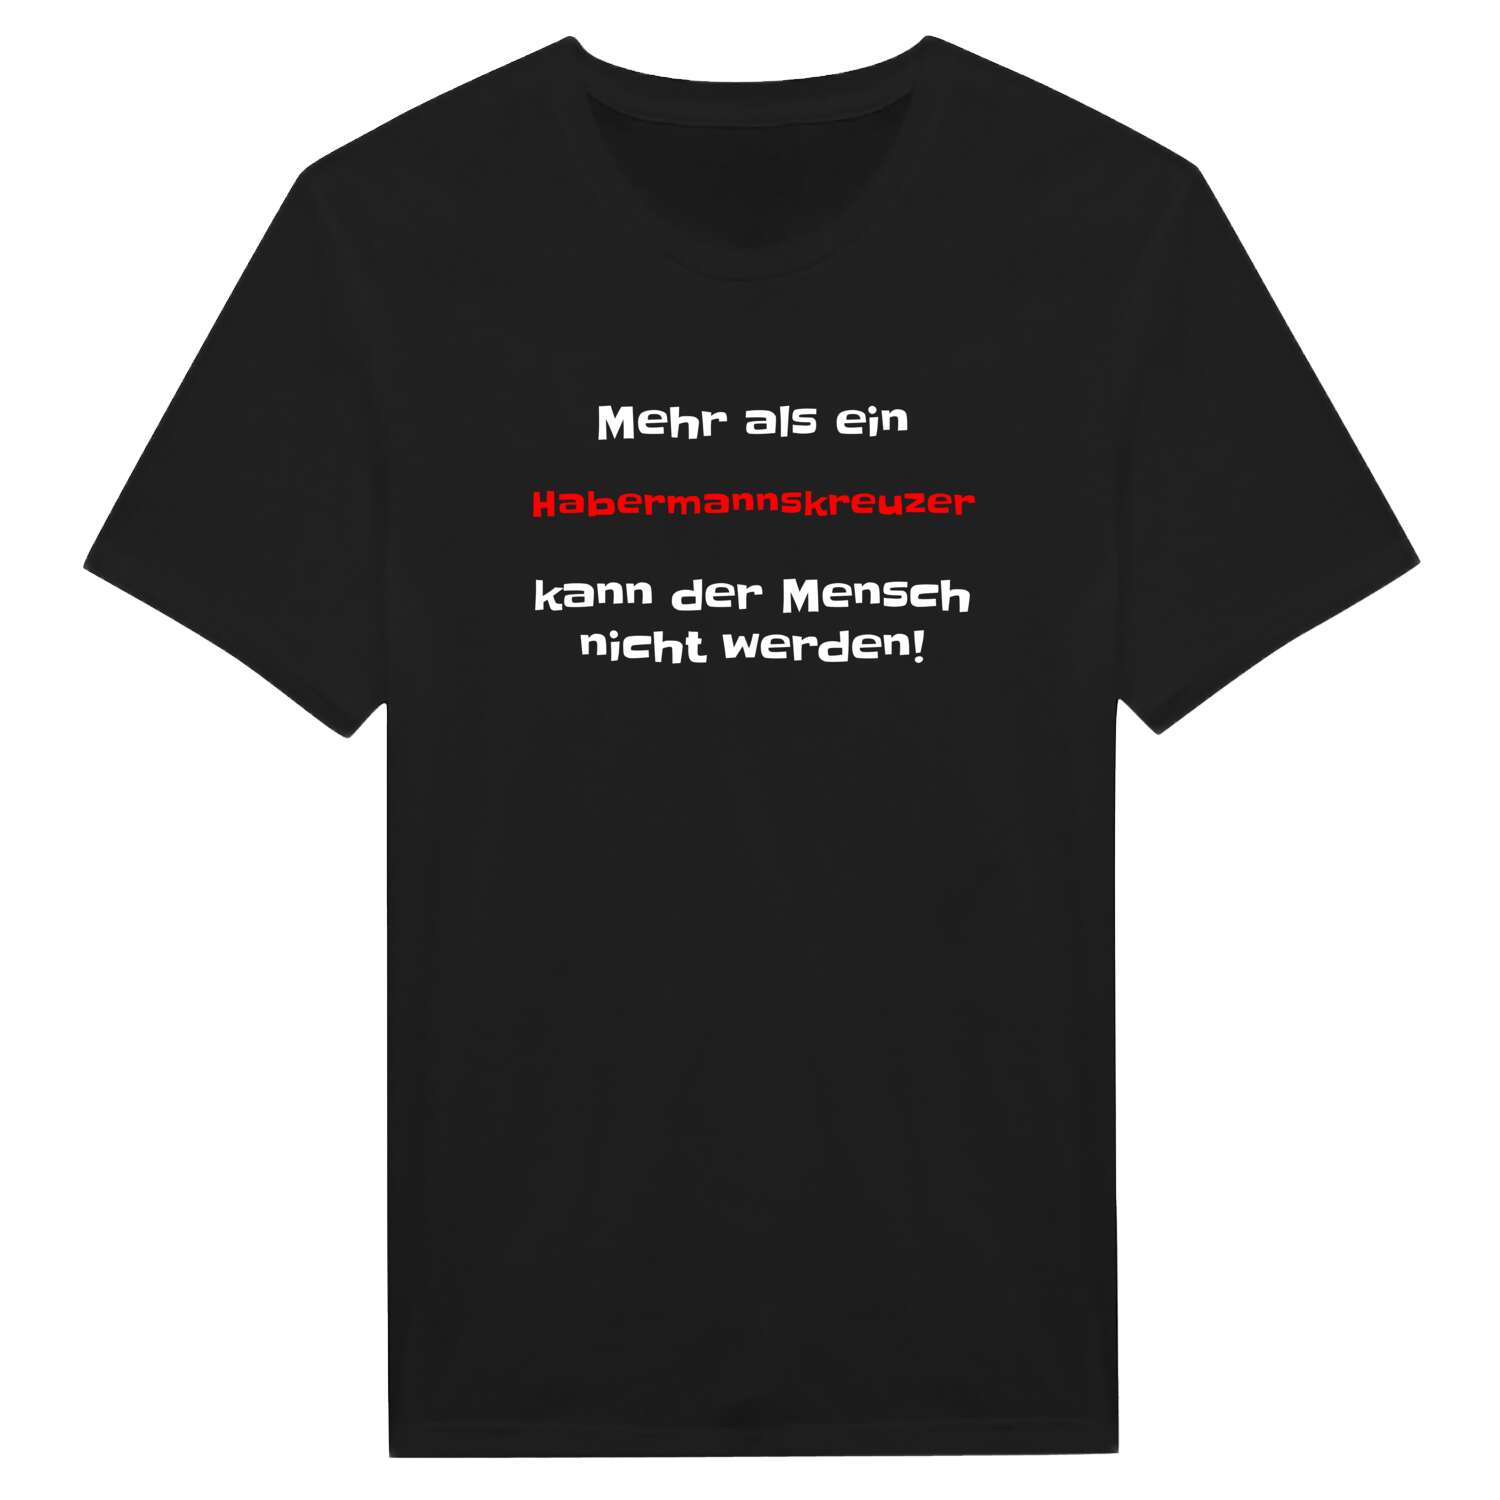 Habermannskreuz T-Shirt »Mehr als ein«